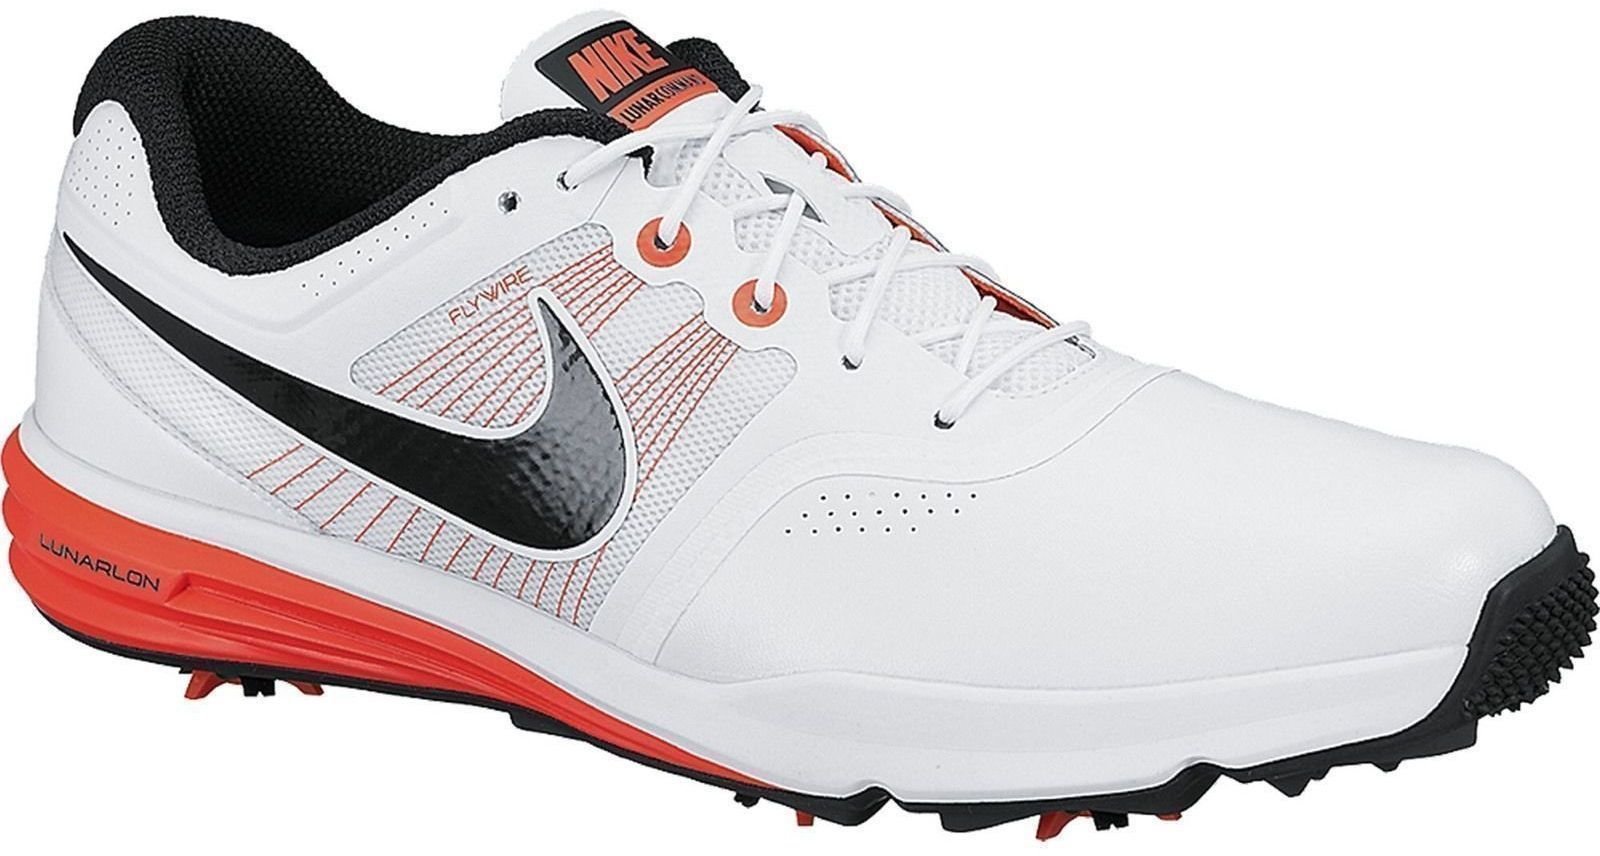 Calçado de golfe para homem Nike Lunar Command Mens Golf Shoes White/Black/Crimson US 11